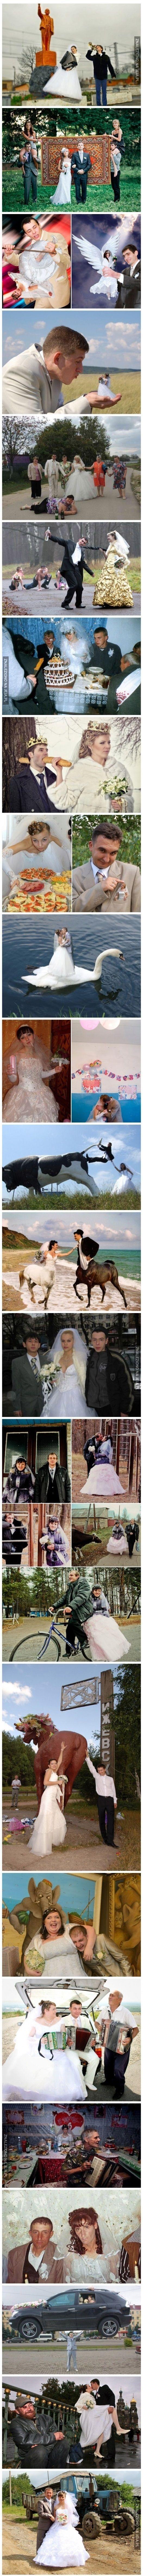 Słowiańskie śluby